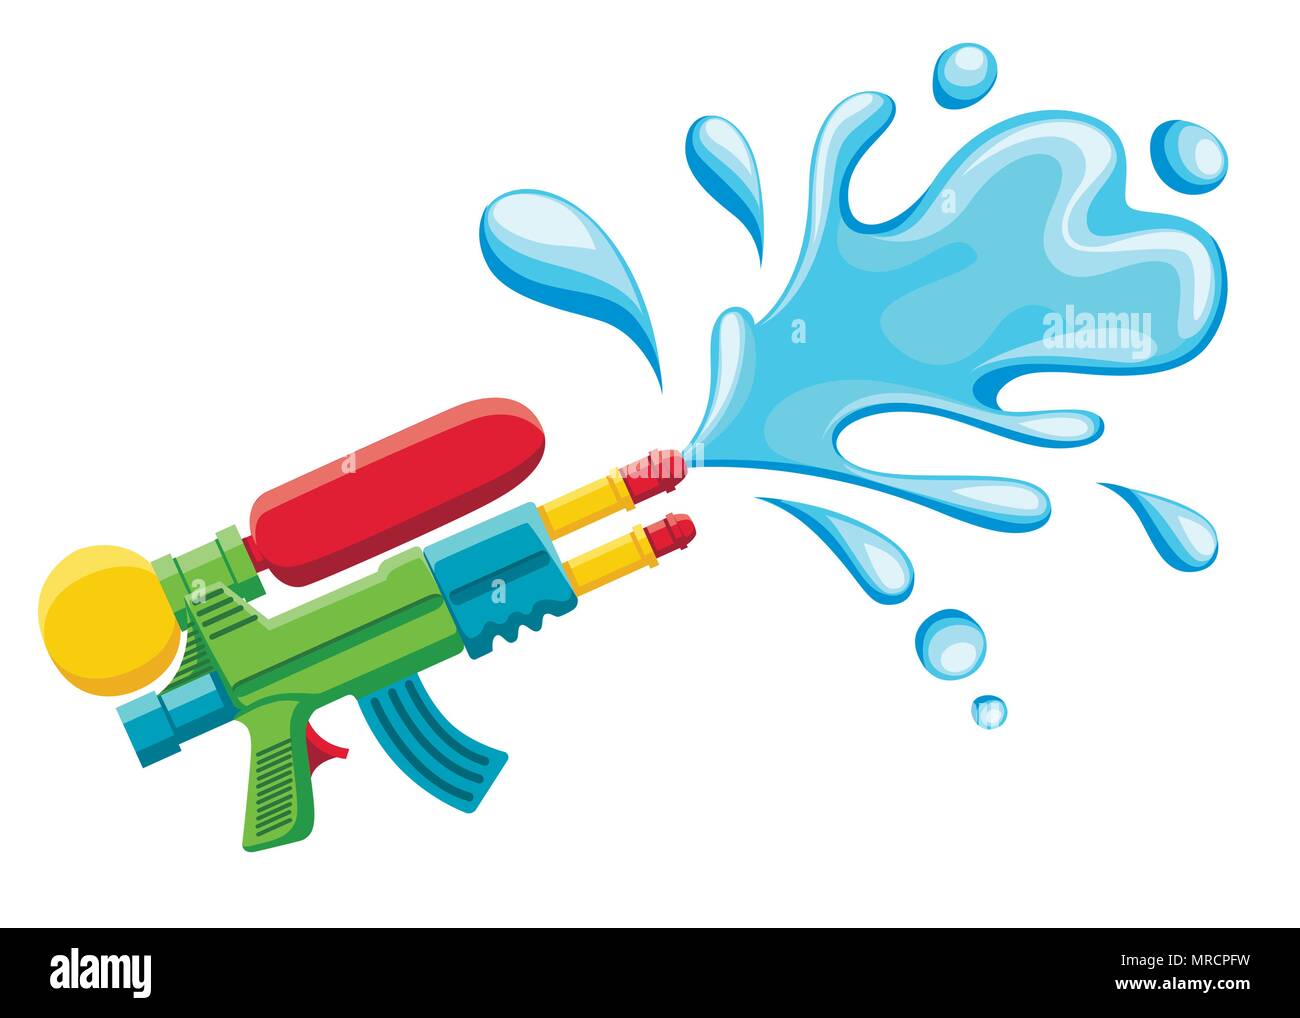 Wasserpistole Abbildung. Kunststoff Sommer Spielzeug. Farbenfrohes Design  für Kinder. Pistole mit Wasser spritzen. Flache Vector Illustration auf  weißem Hintergrund Stock-Vektorgrafik - Alamy